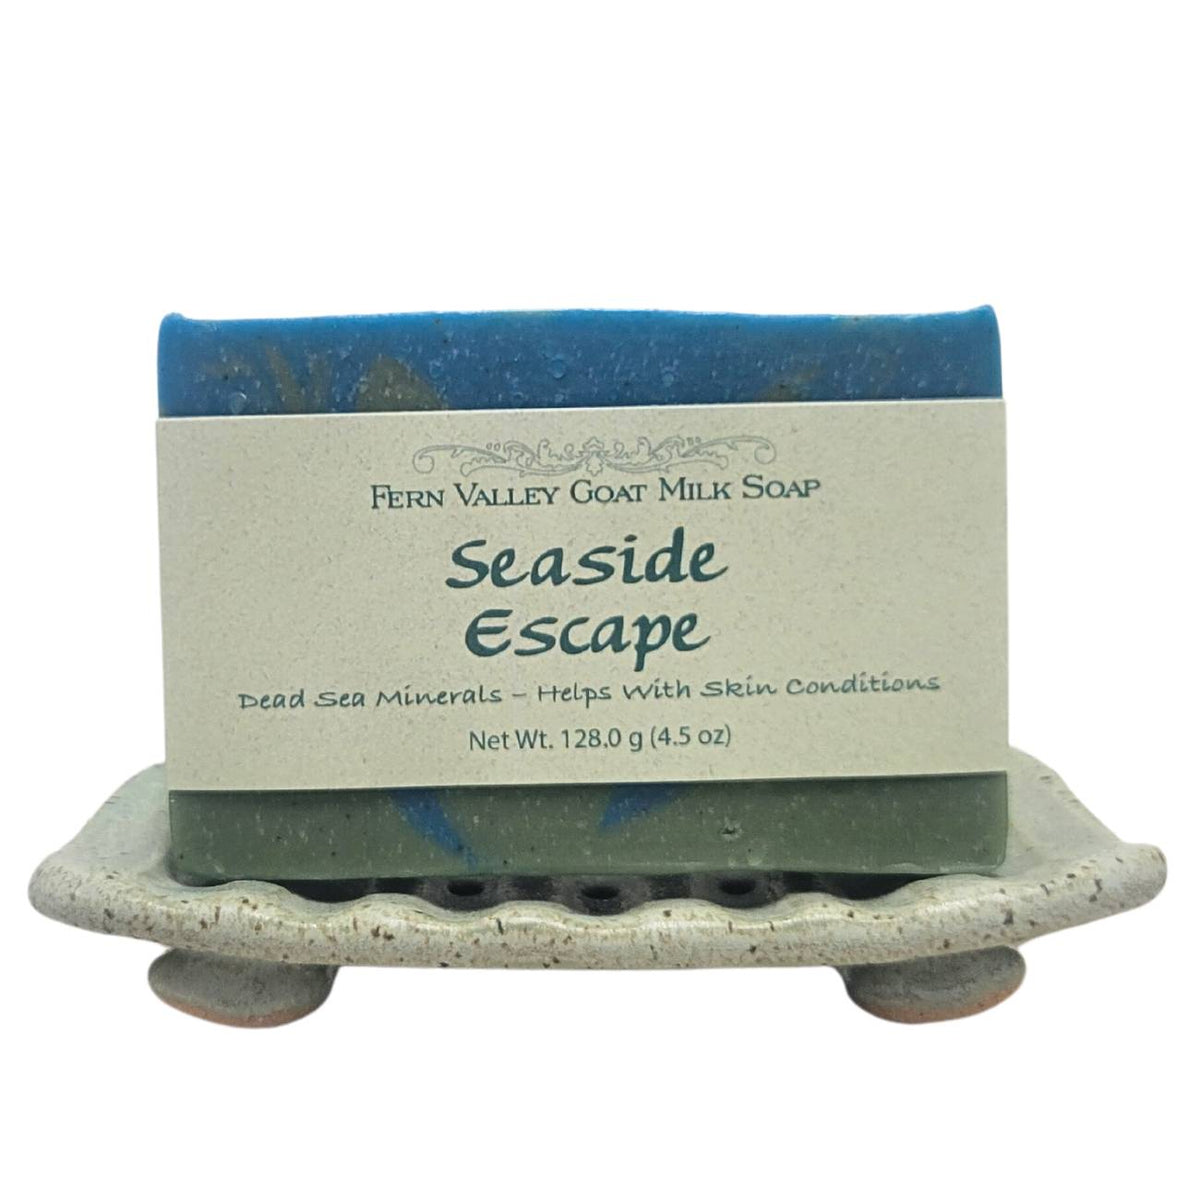 Natural Goat Milk Soap | Dead Sea Mineral Soap | Seaside Escape